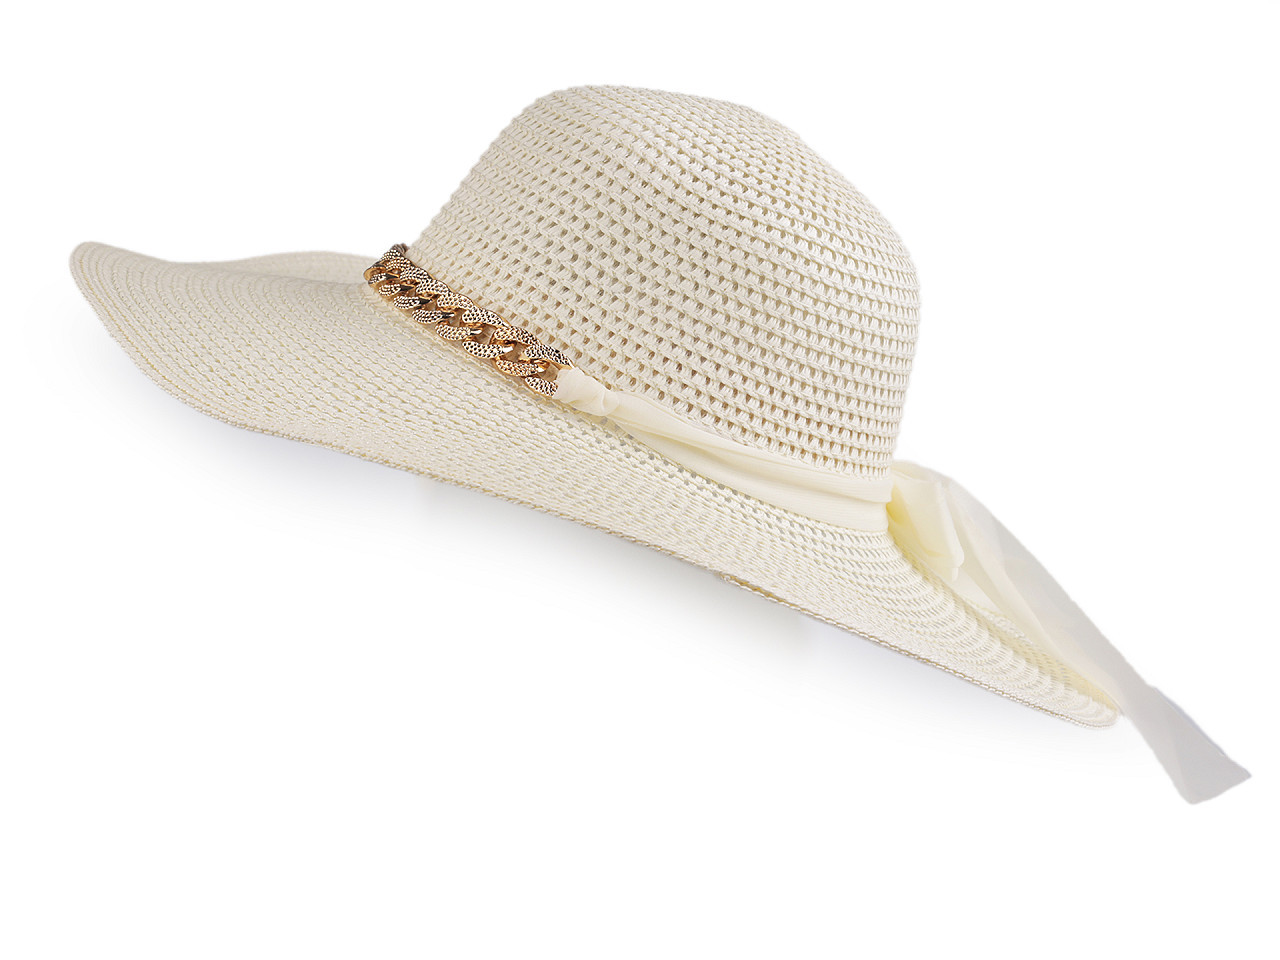 Dámský letní klobouk / slamák, barva 18 režná světlá